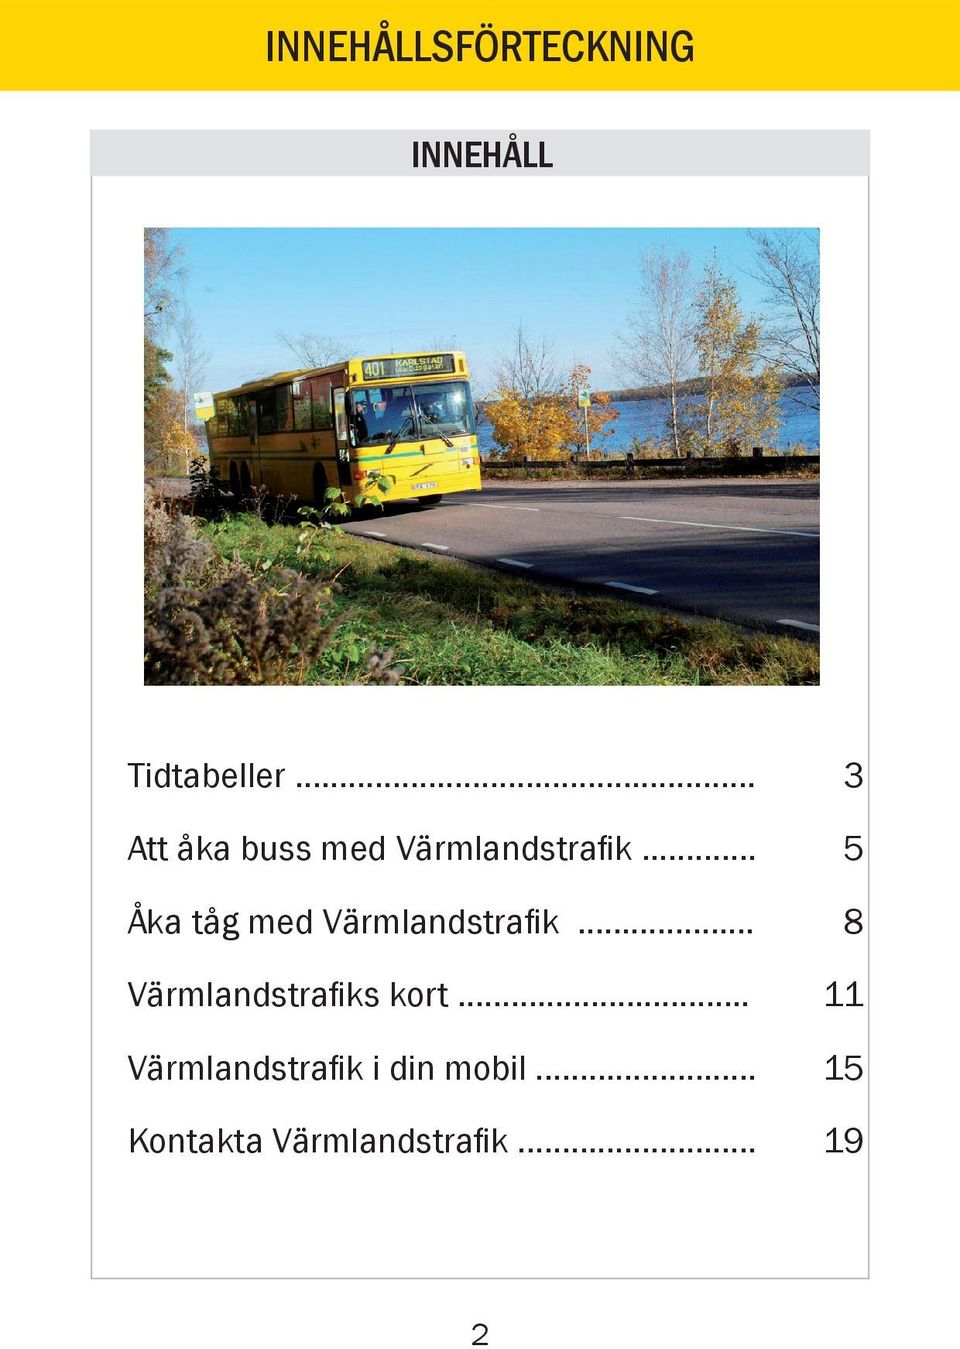 .. Åka tåg med Värmlandstrafik.